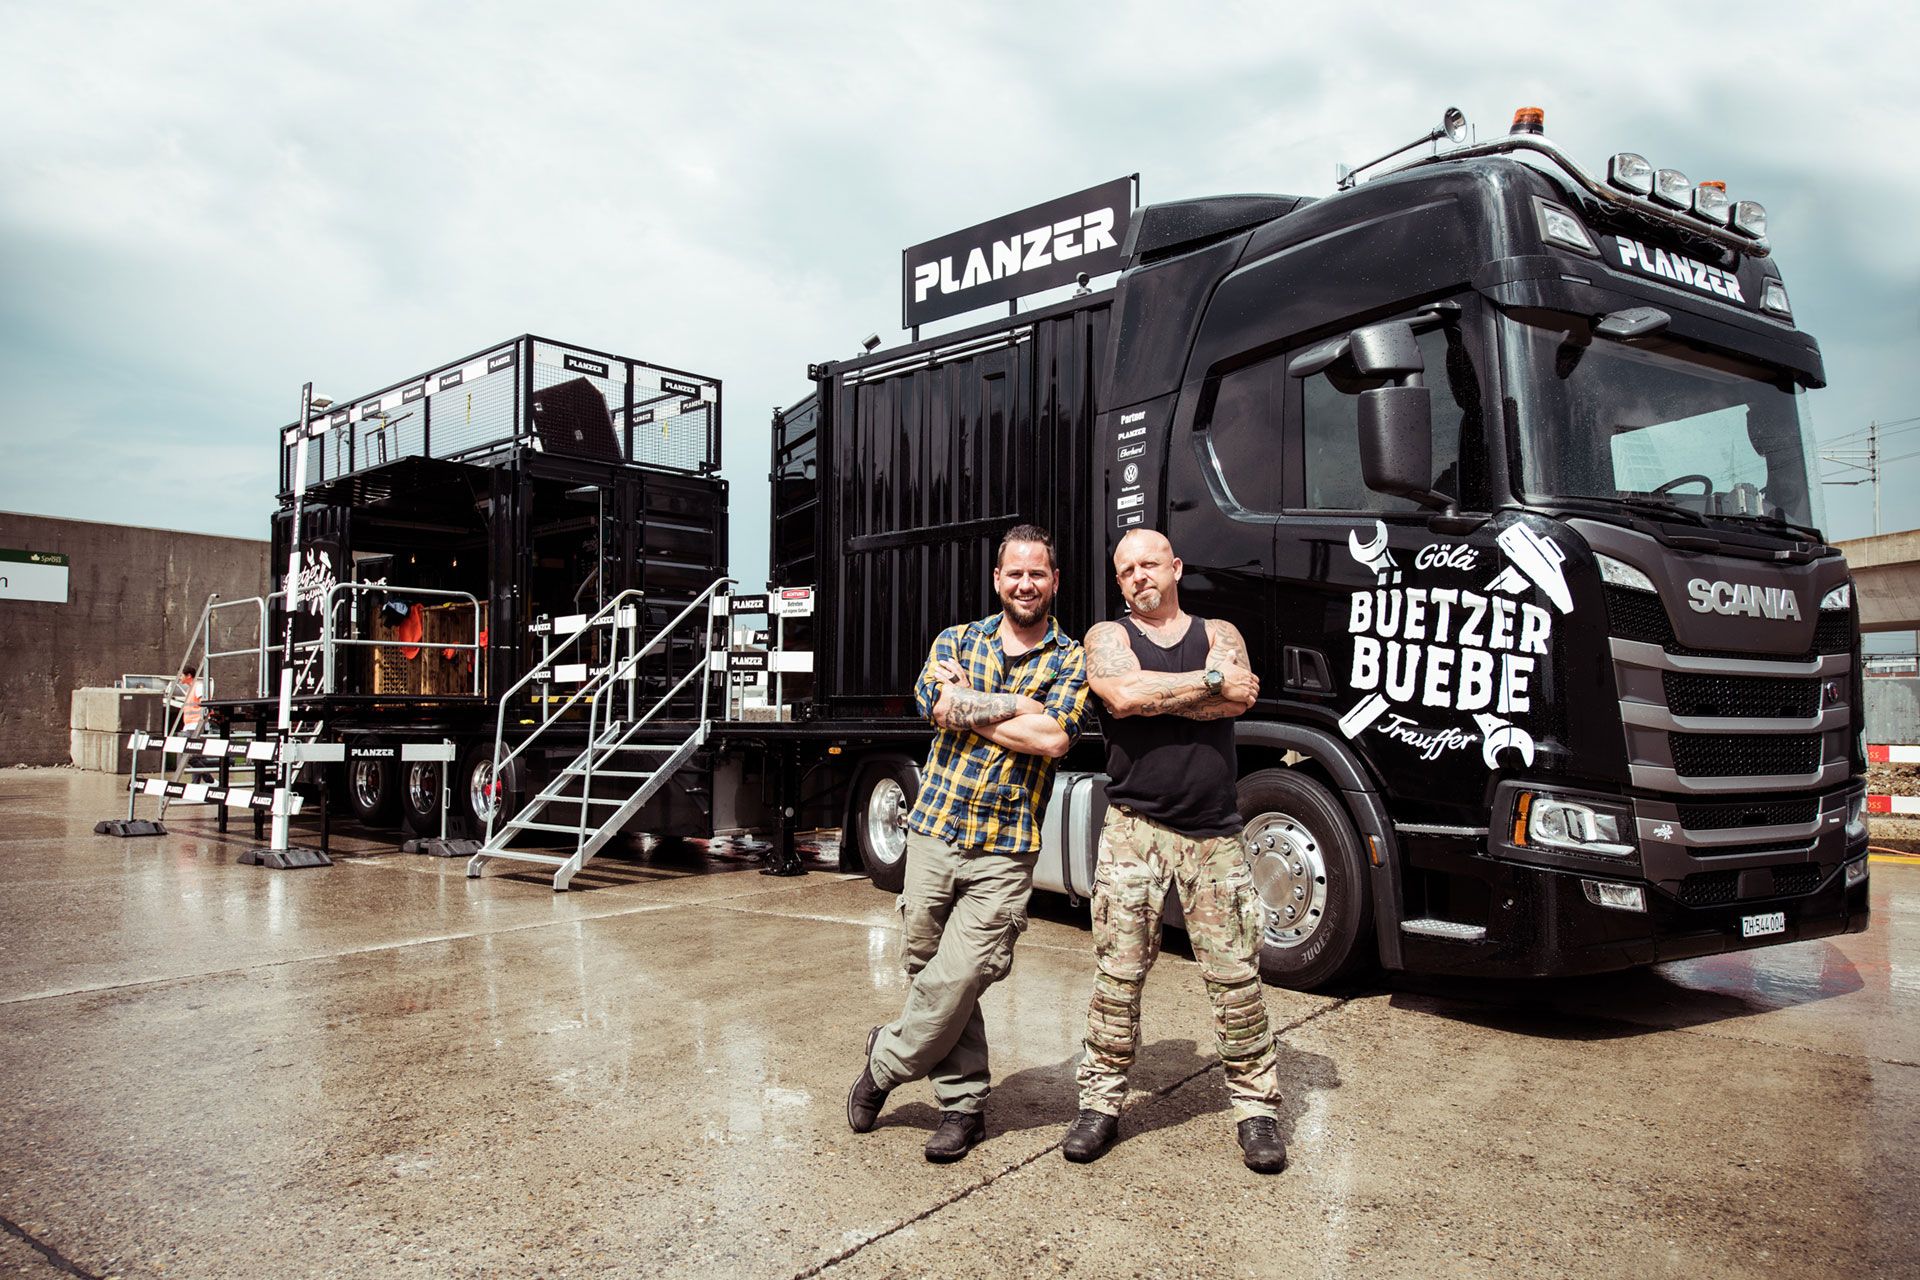 Göle & Trauffer stehen vor dem Planzer Event-Truck mit aufgebauter B\u00fchne und Sound-Equipment im Hintergrund.